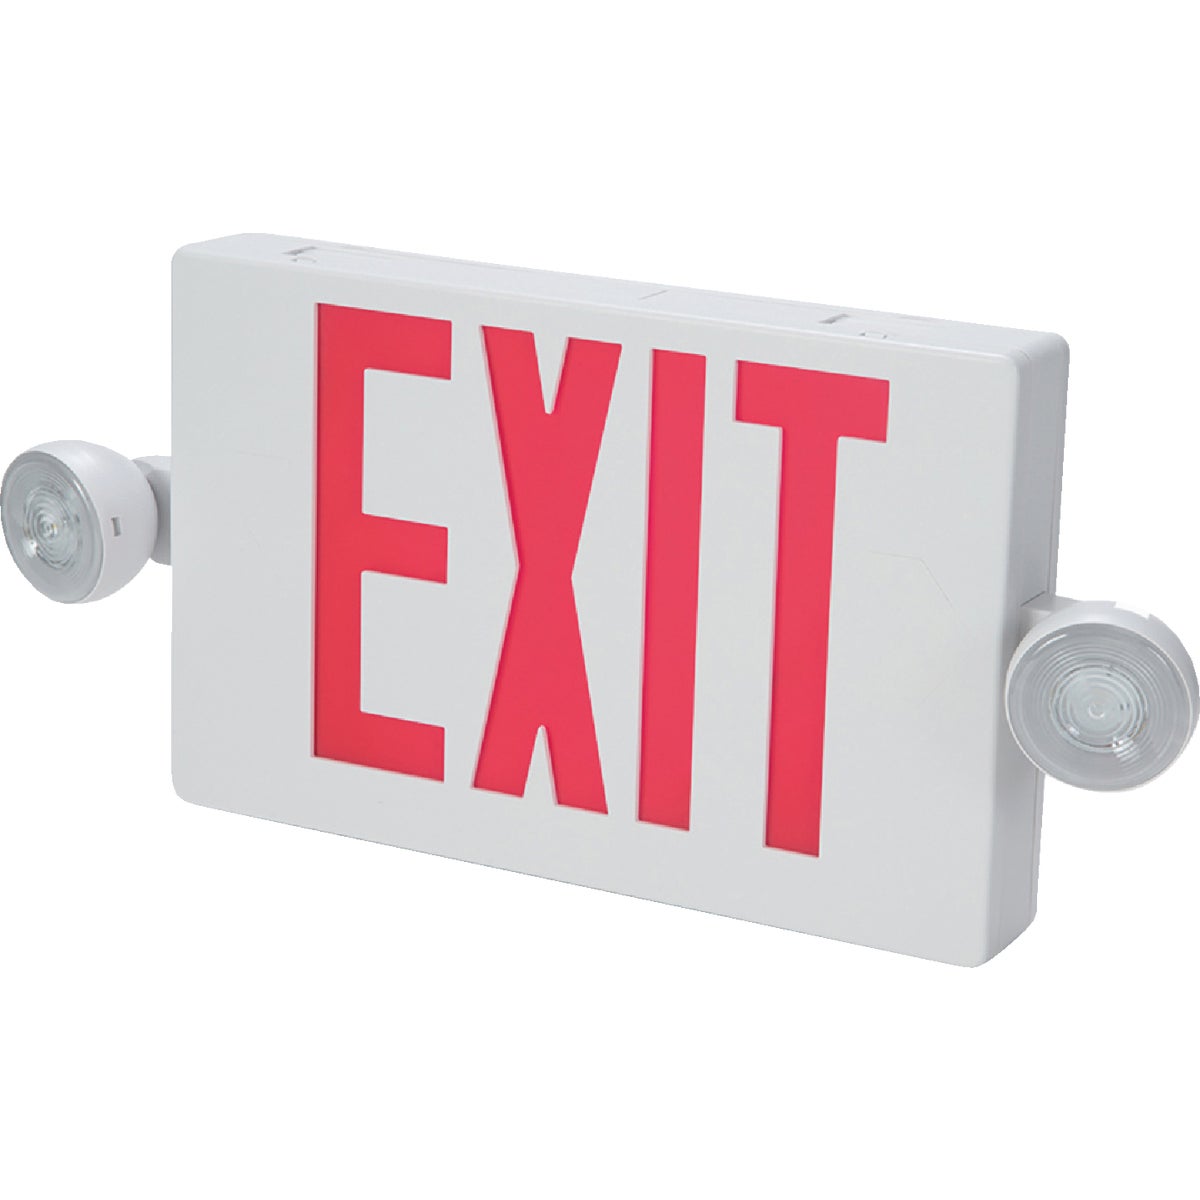 Sure-Lites LED Red Lettering Polycarbonate LED Emergency Light & Exit Sign